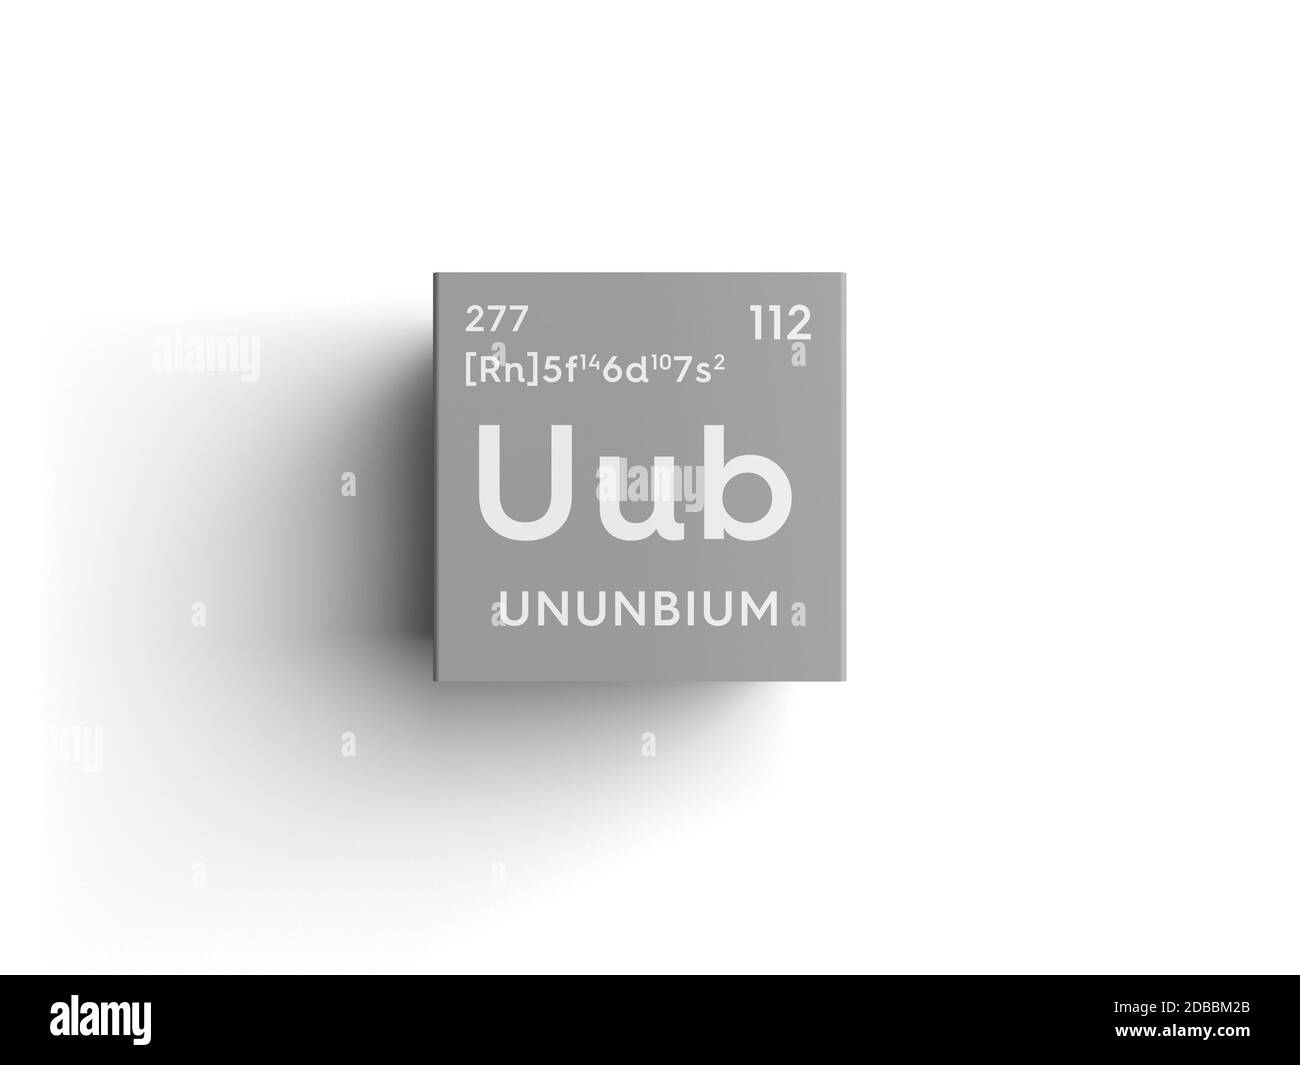 Ununbium. Transition metals. Chemical Element of Mendeleev's Periodic Table. Ununbium in square cube creative concept. 3D illustration. Stock Photo